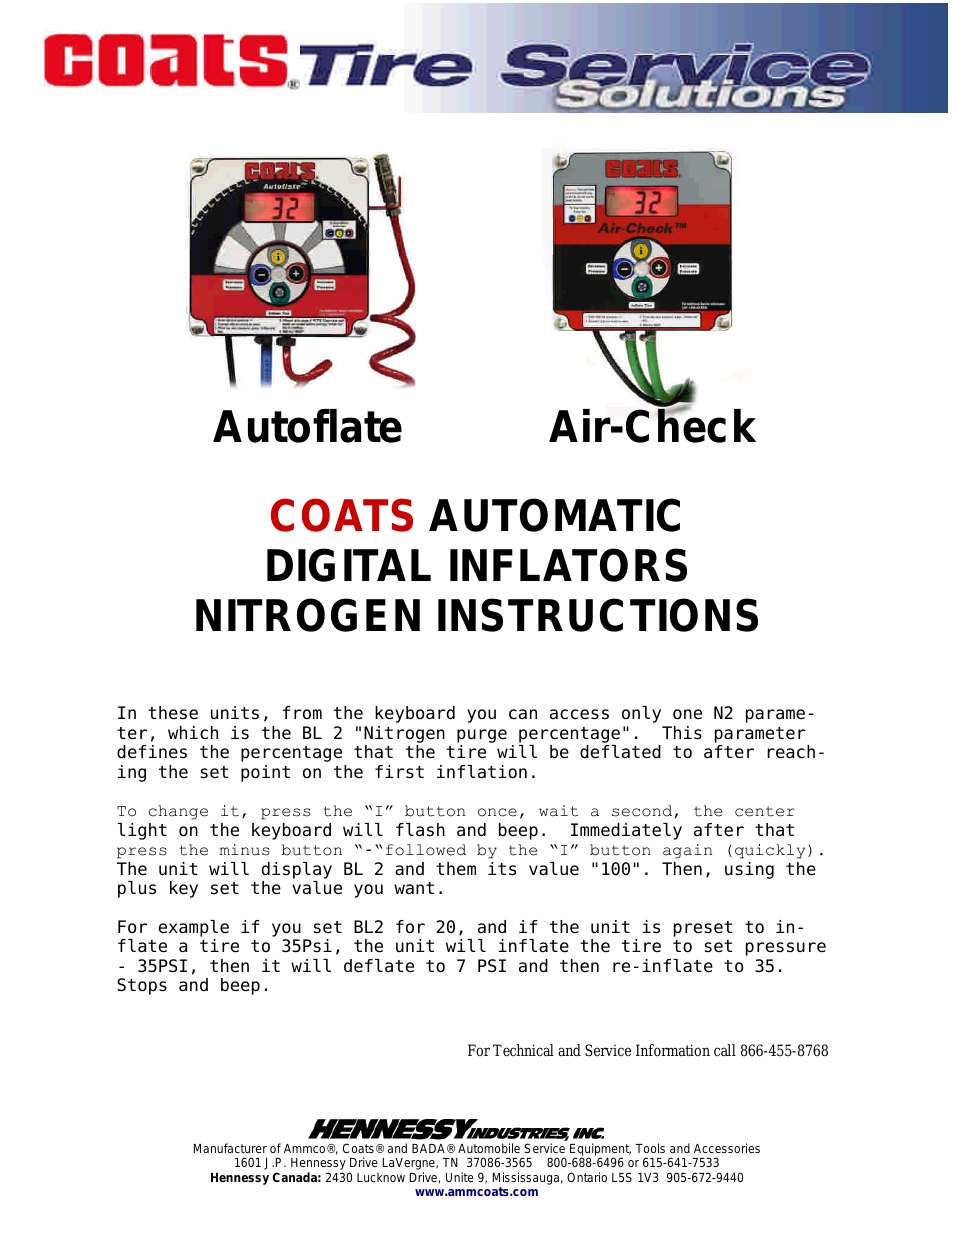 Autoflate Nitrogen